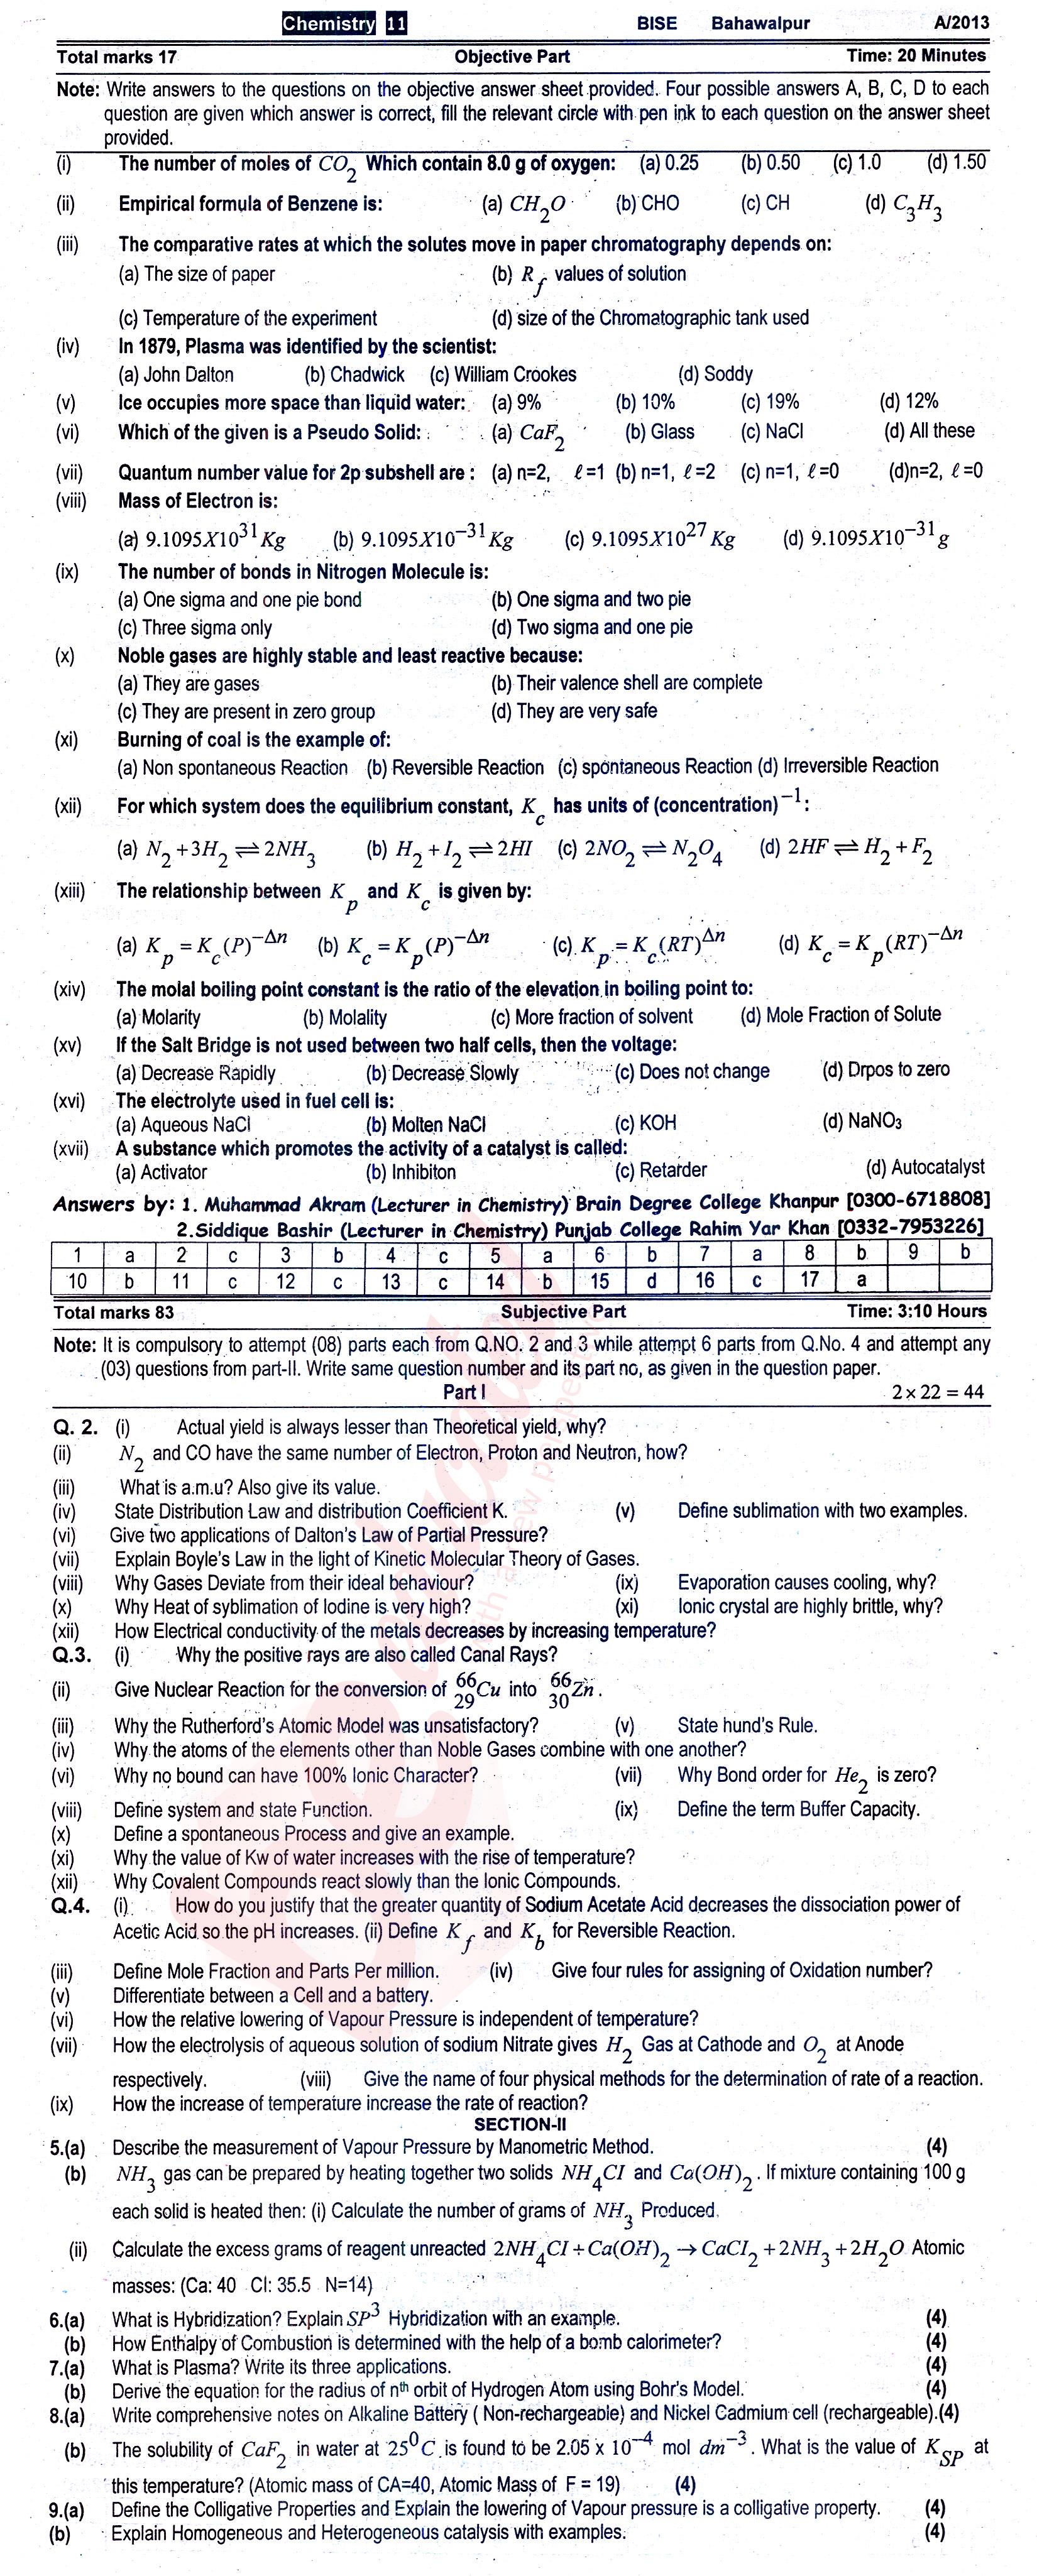 Chemistry FSC Part 1 Past Paper Group 1 BISE Bahawalpur 2013